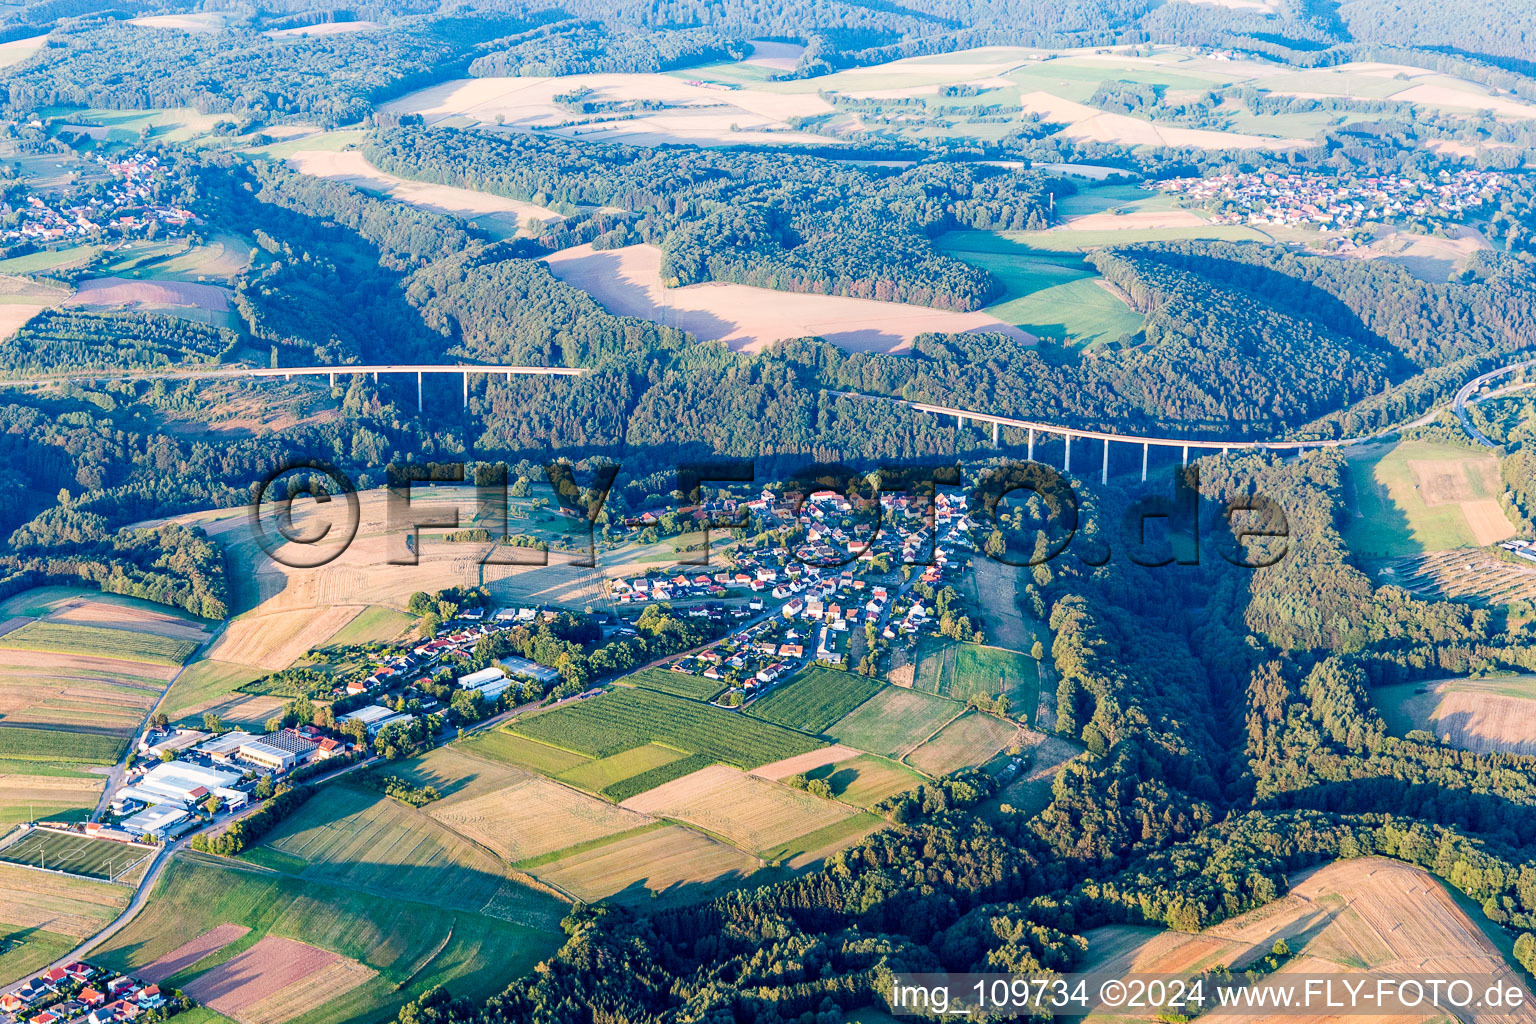 Aerial view of Petersberg in Petersberg(Pfalz) in the state Rhineland-Palatinate, Germany